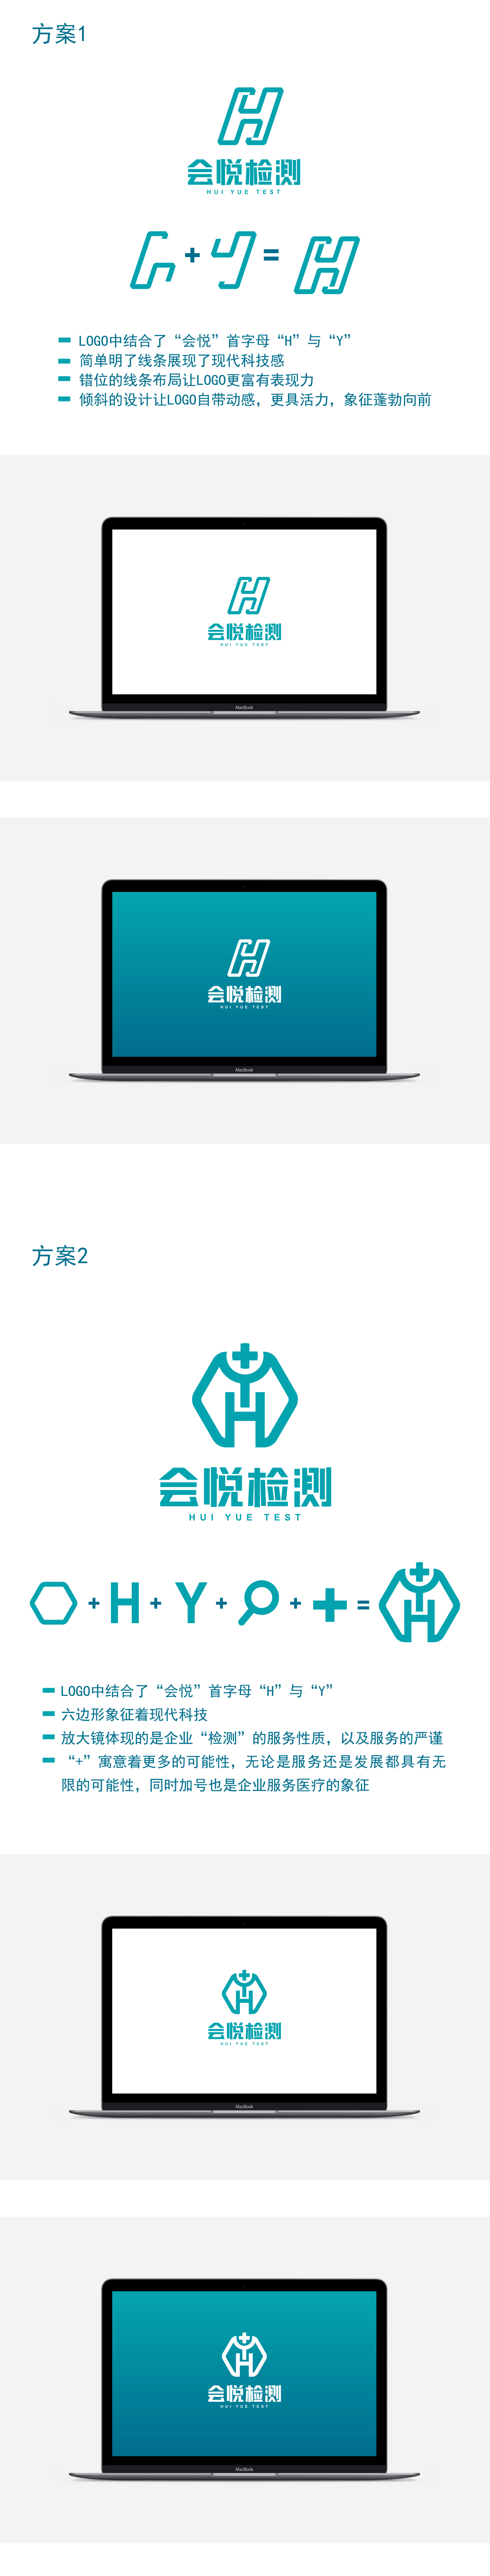 淘宝美工y154339会悦检测有限logo设计作品